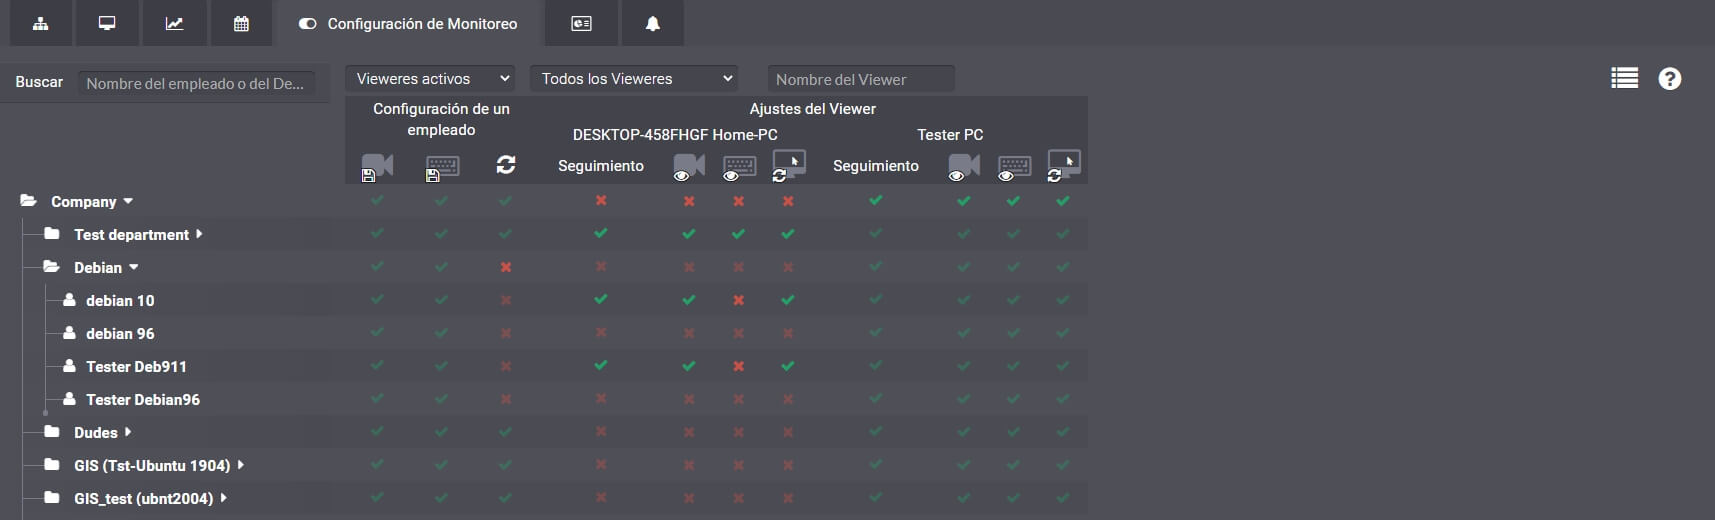 Captura de pantalla 2: Configuración de la visibilidad de los empleados para un Viewer específico en la interfaz web del SC.